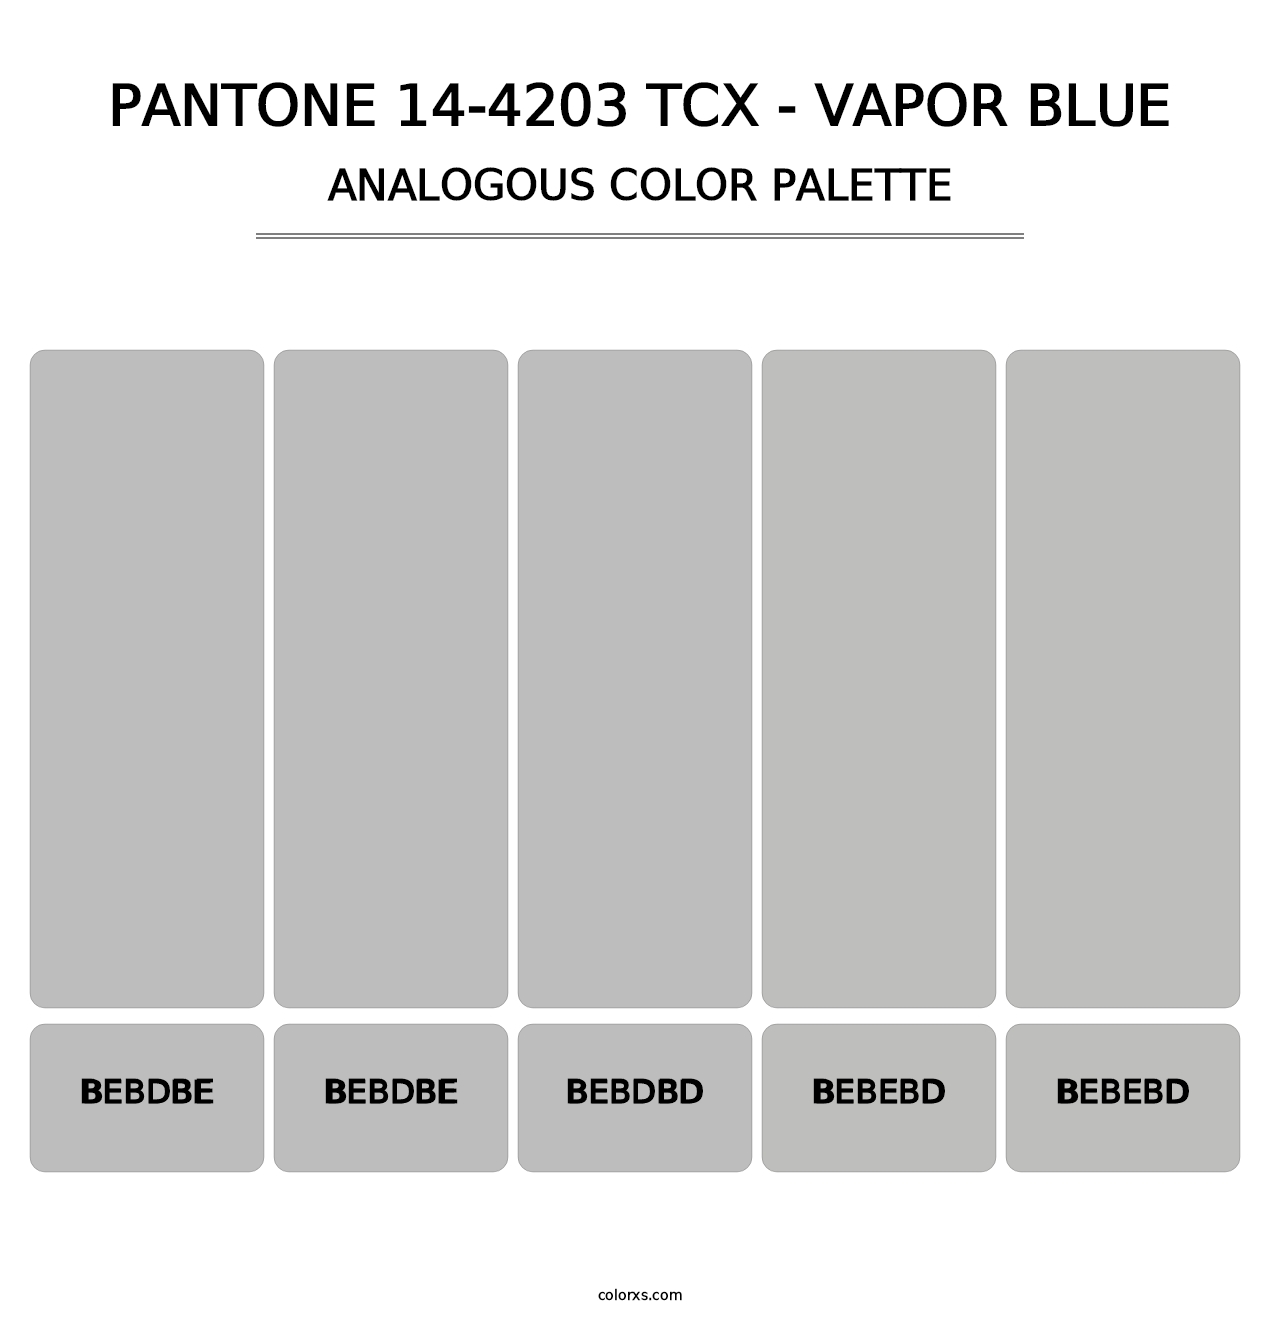 PANTONE 14-4203 TCX - Vapor Blue - Analogous Color Palette